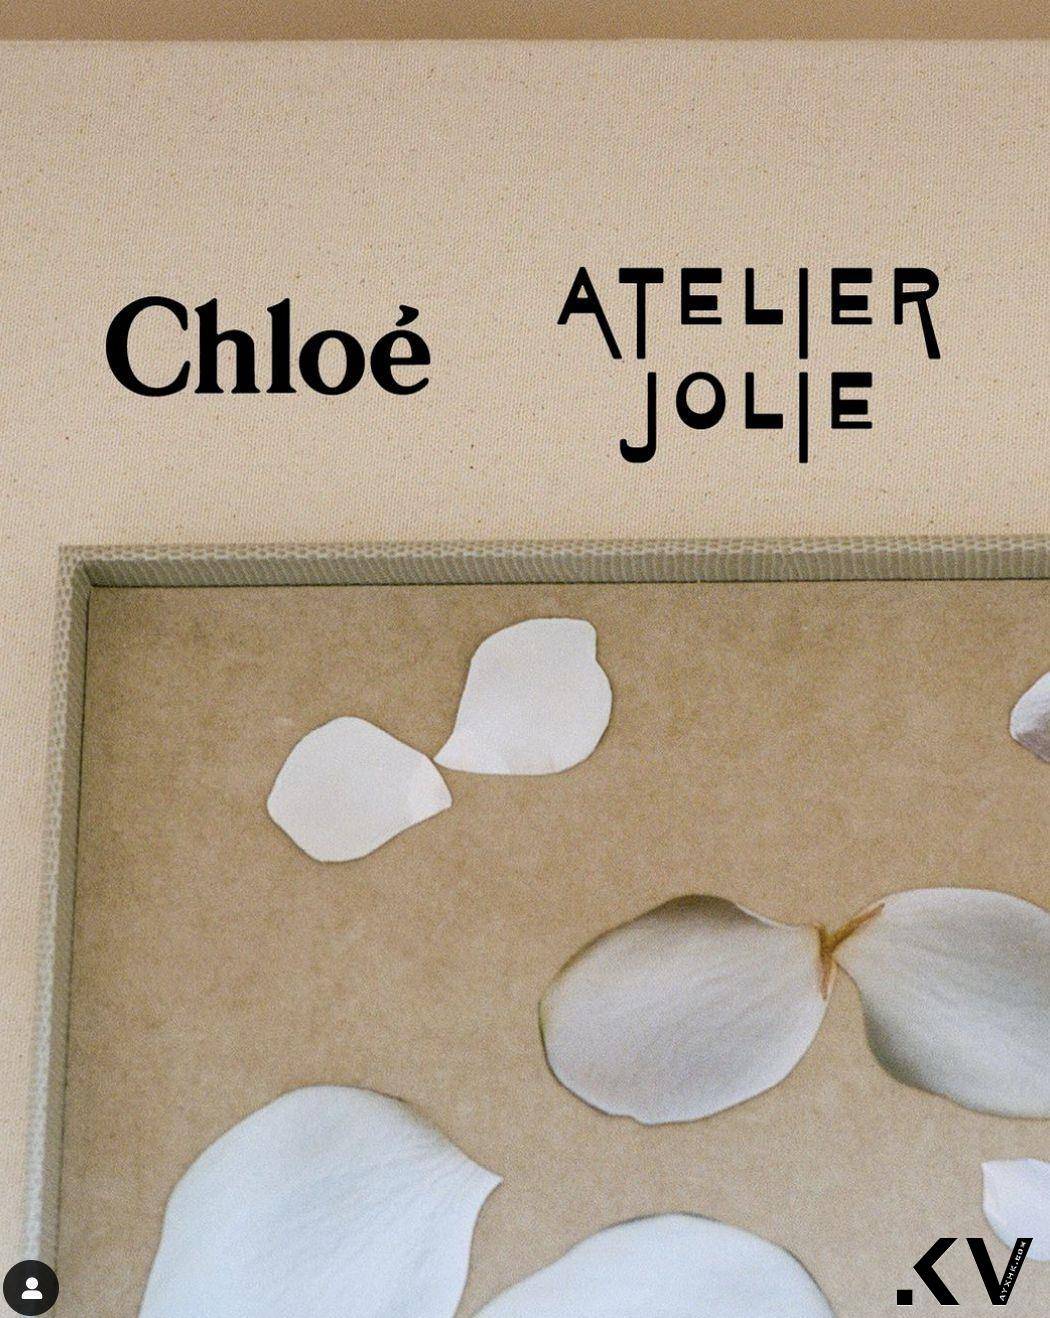 裘莉亲自设计！Chloé创意总监卸任前联名Atelier Jolie打造“最仙晚礼服” 时尚穿搭 图2张